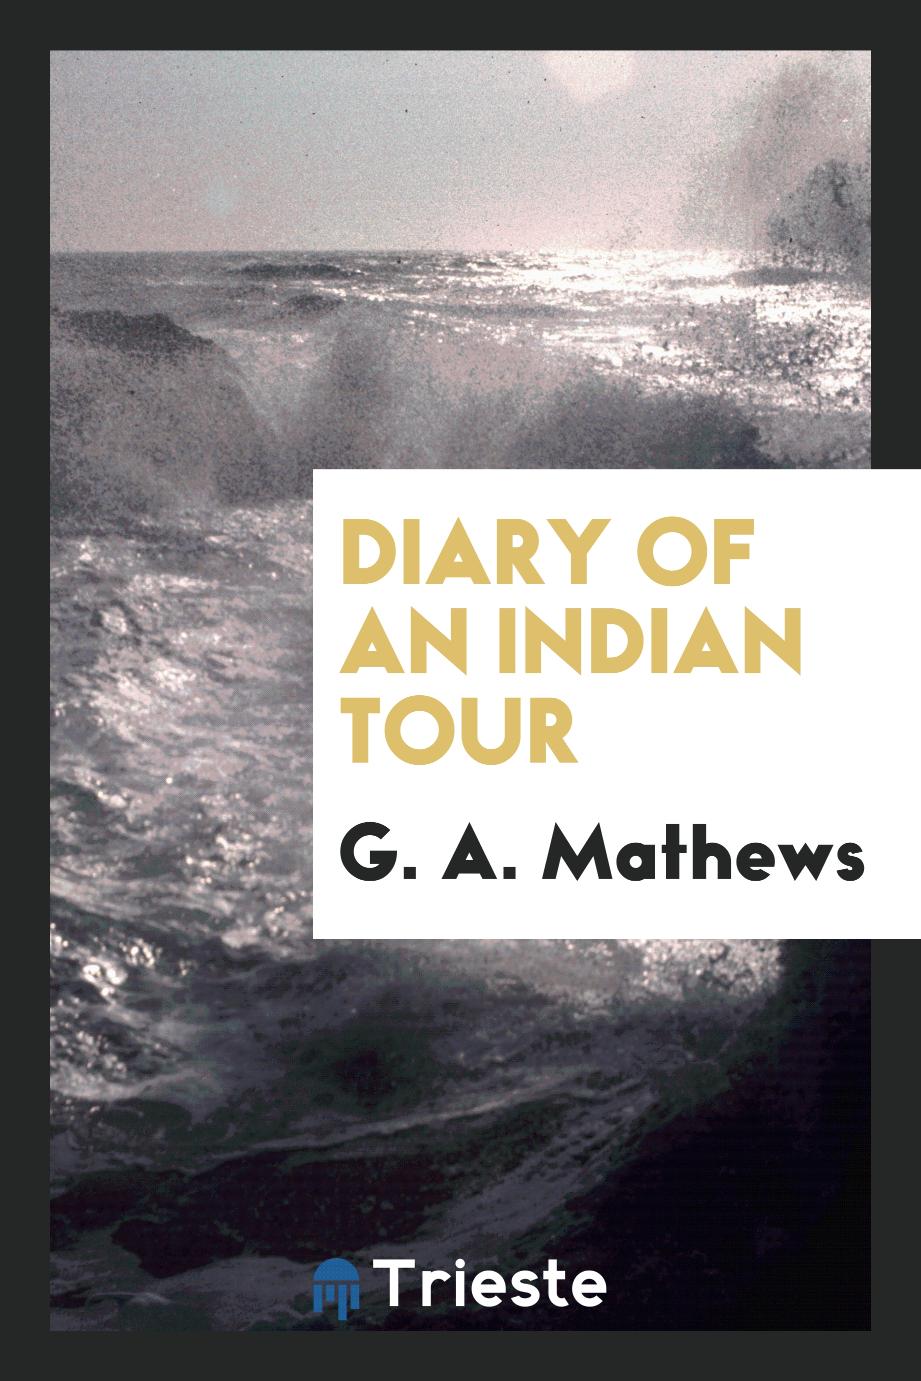 Diary of an Indian tour